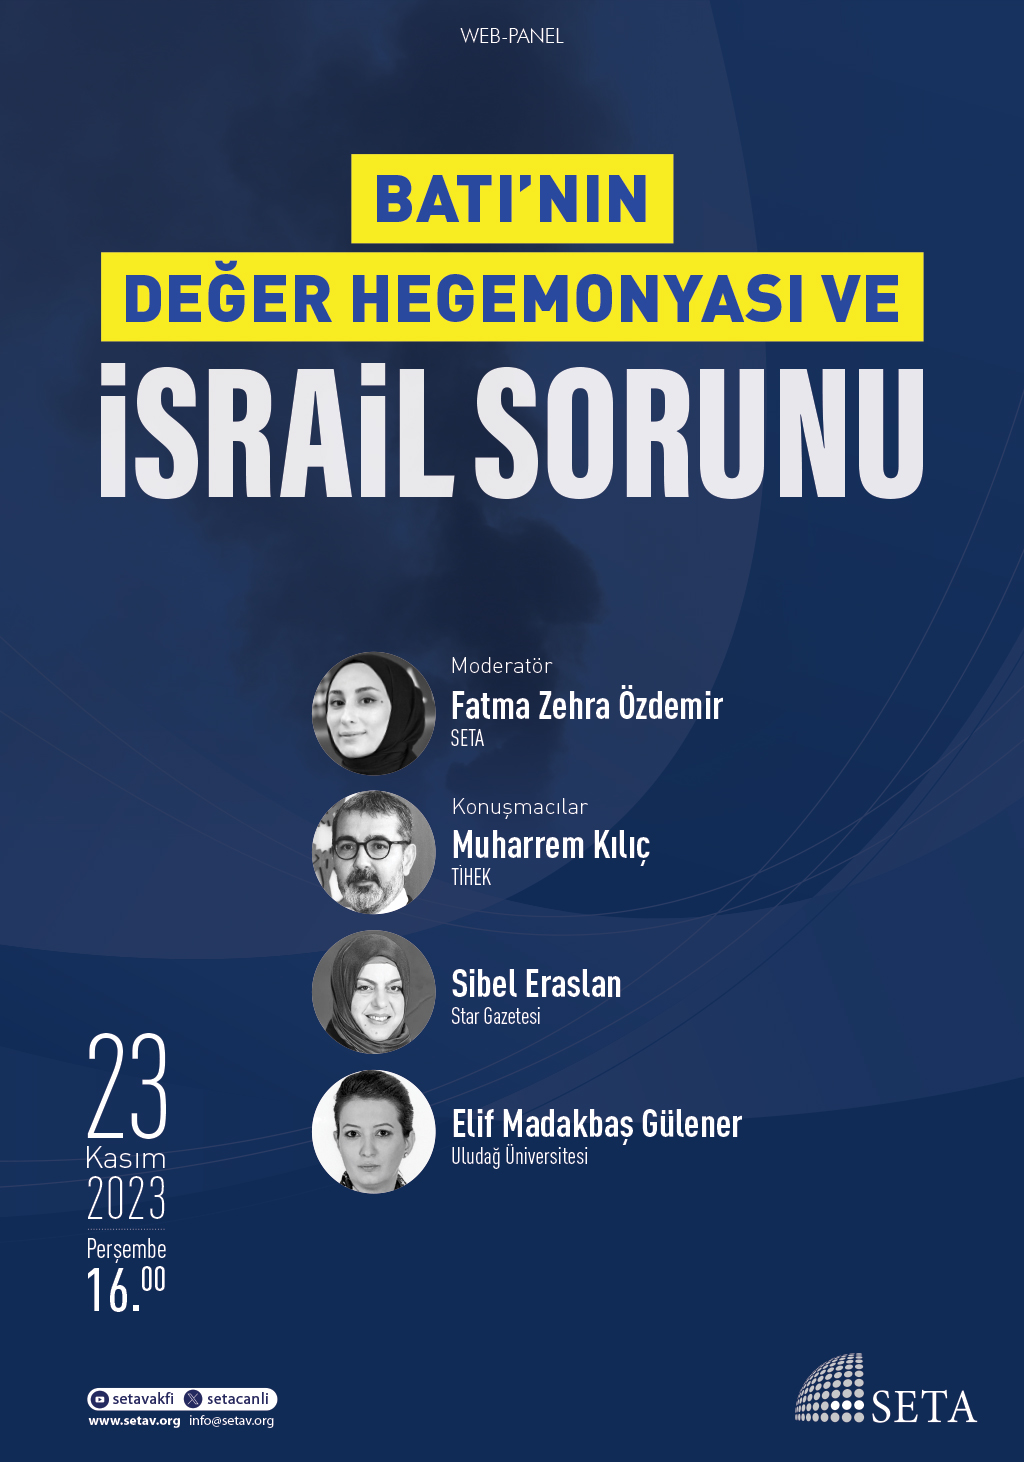 Web Panel: Batı’nın Değer Hegemonyası ve İsrail Sorunu